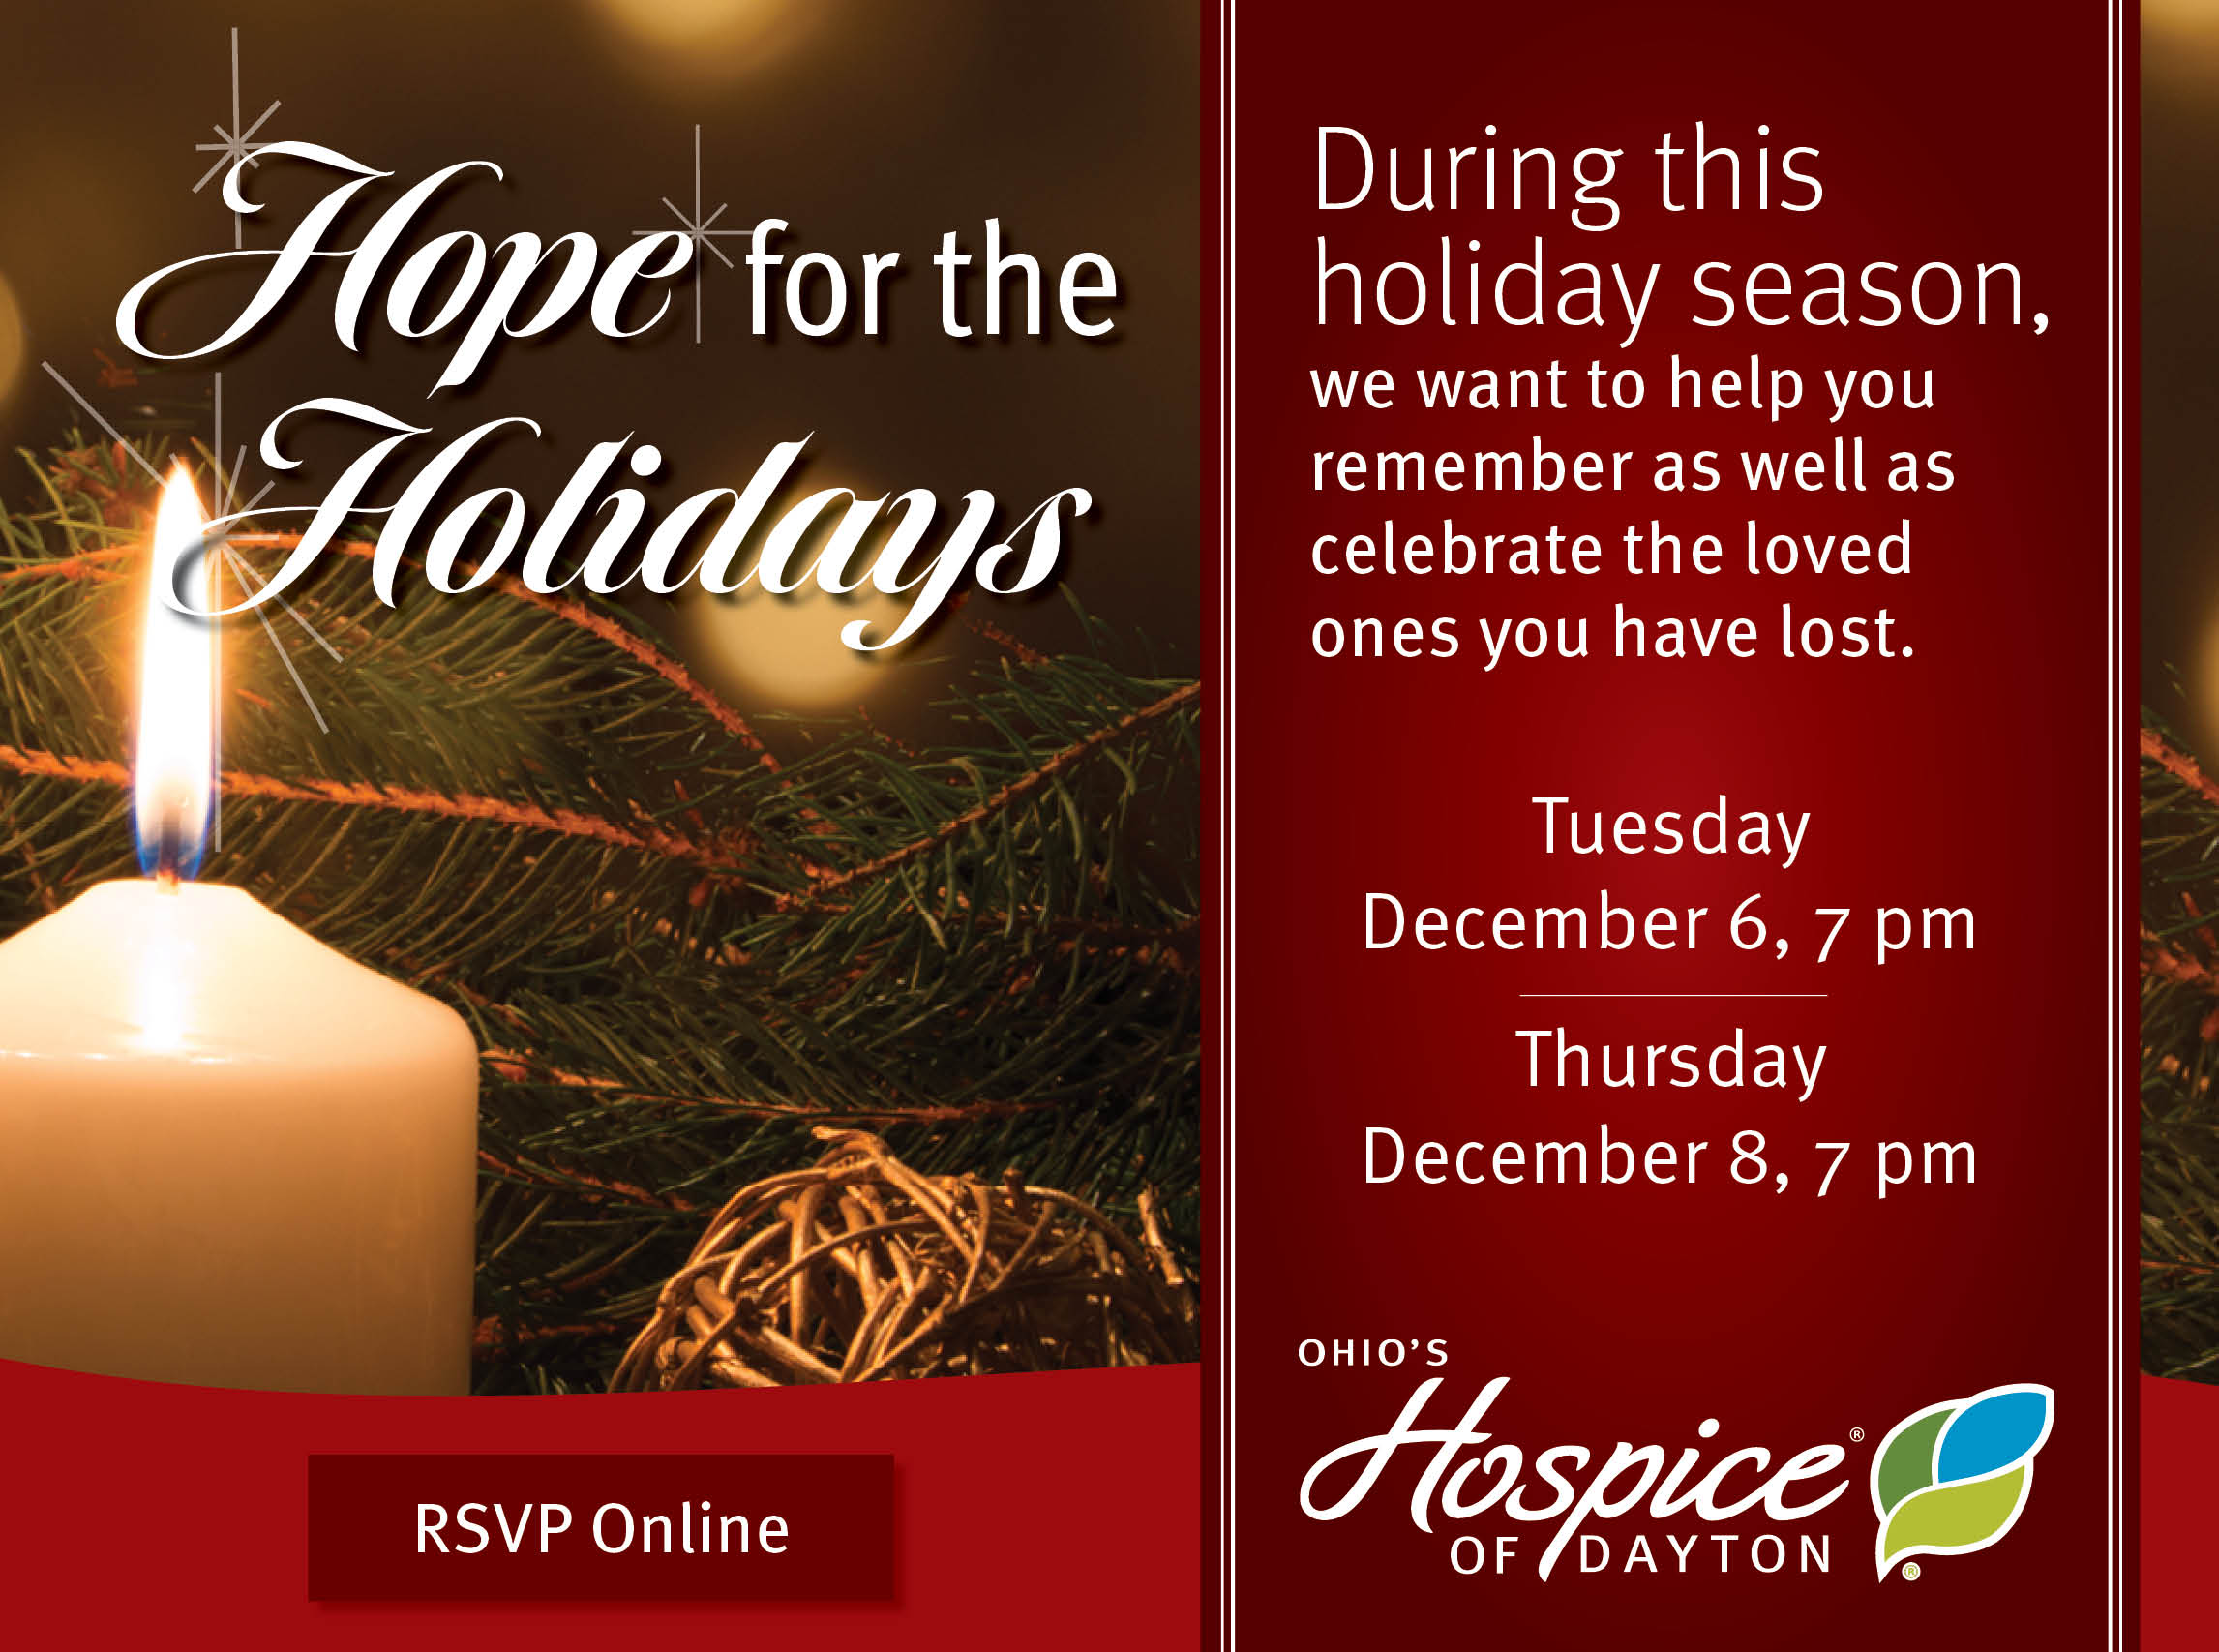 Hope for the Holidays | Ohio's Hospice of Dayton